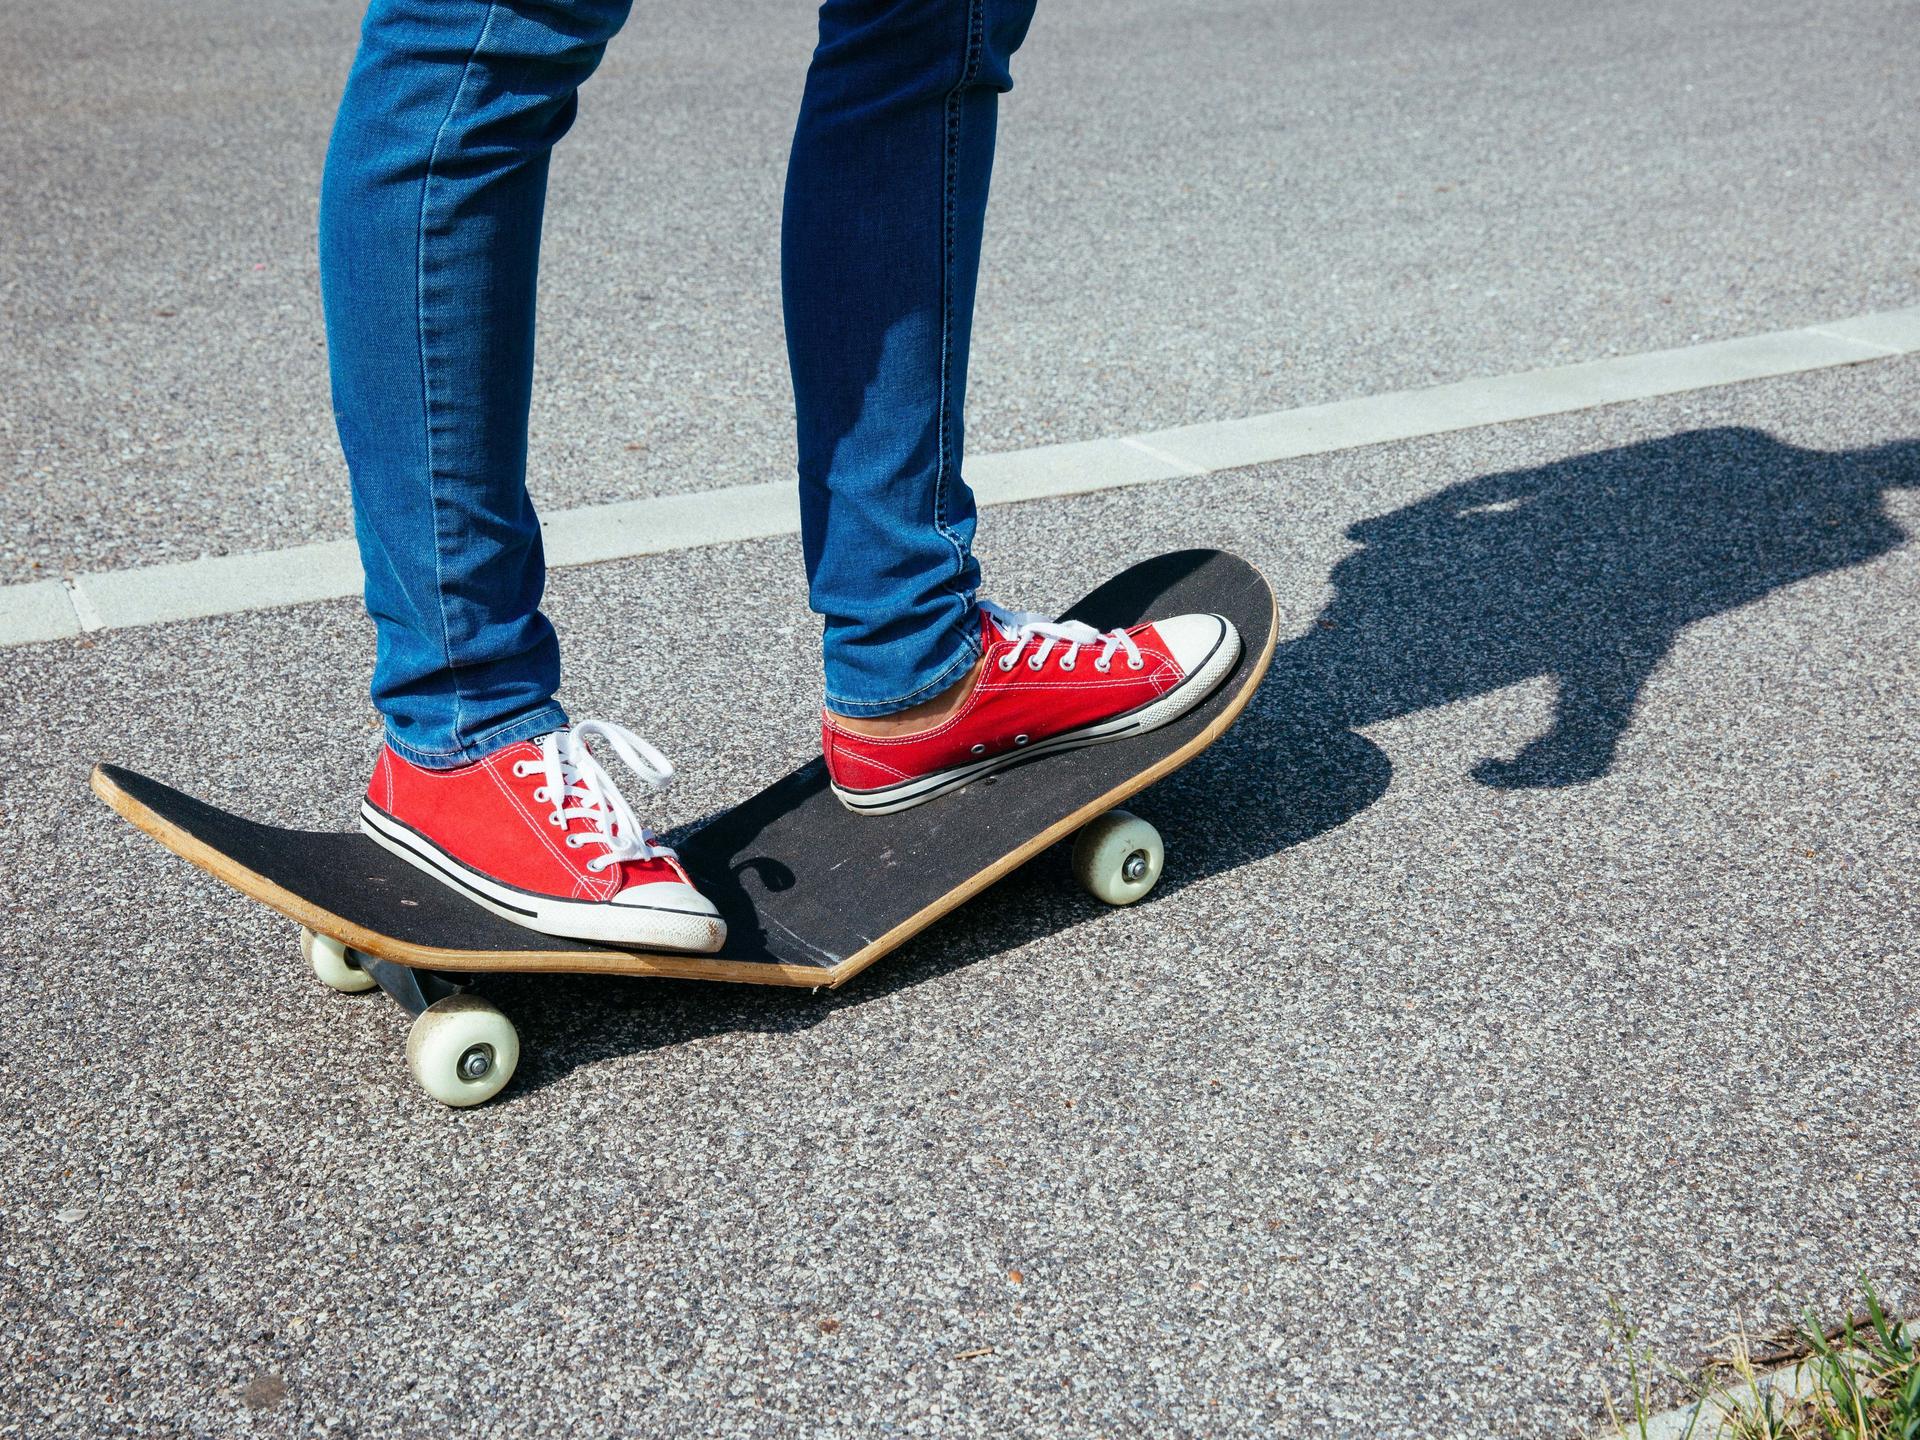 Ein Skateboard bricht während dem Fahren. Die Person darauf trägt rote Turnschuhe und eine enge Jeans.